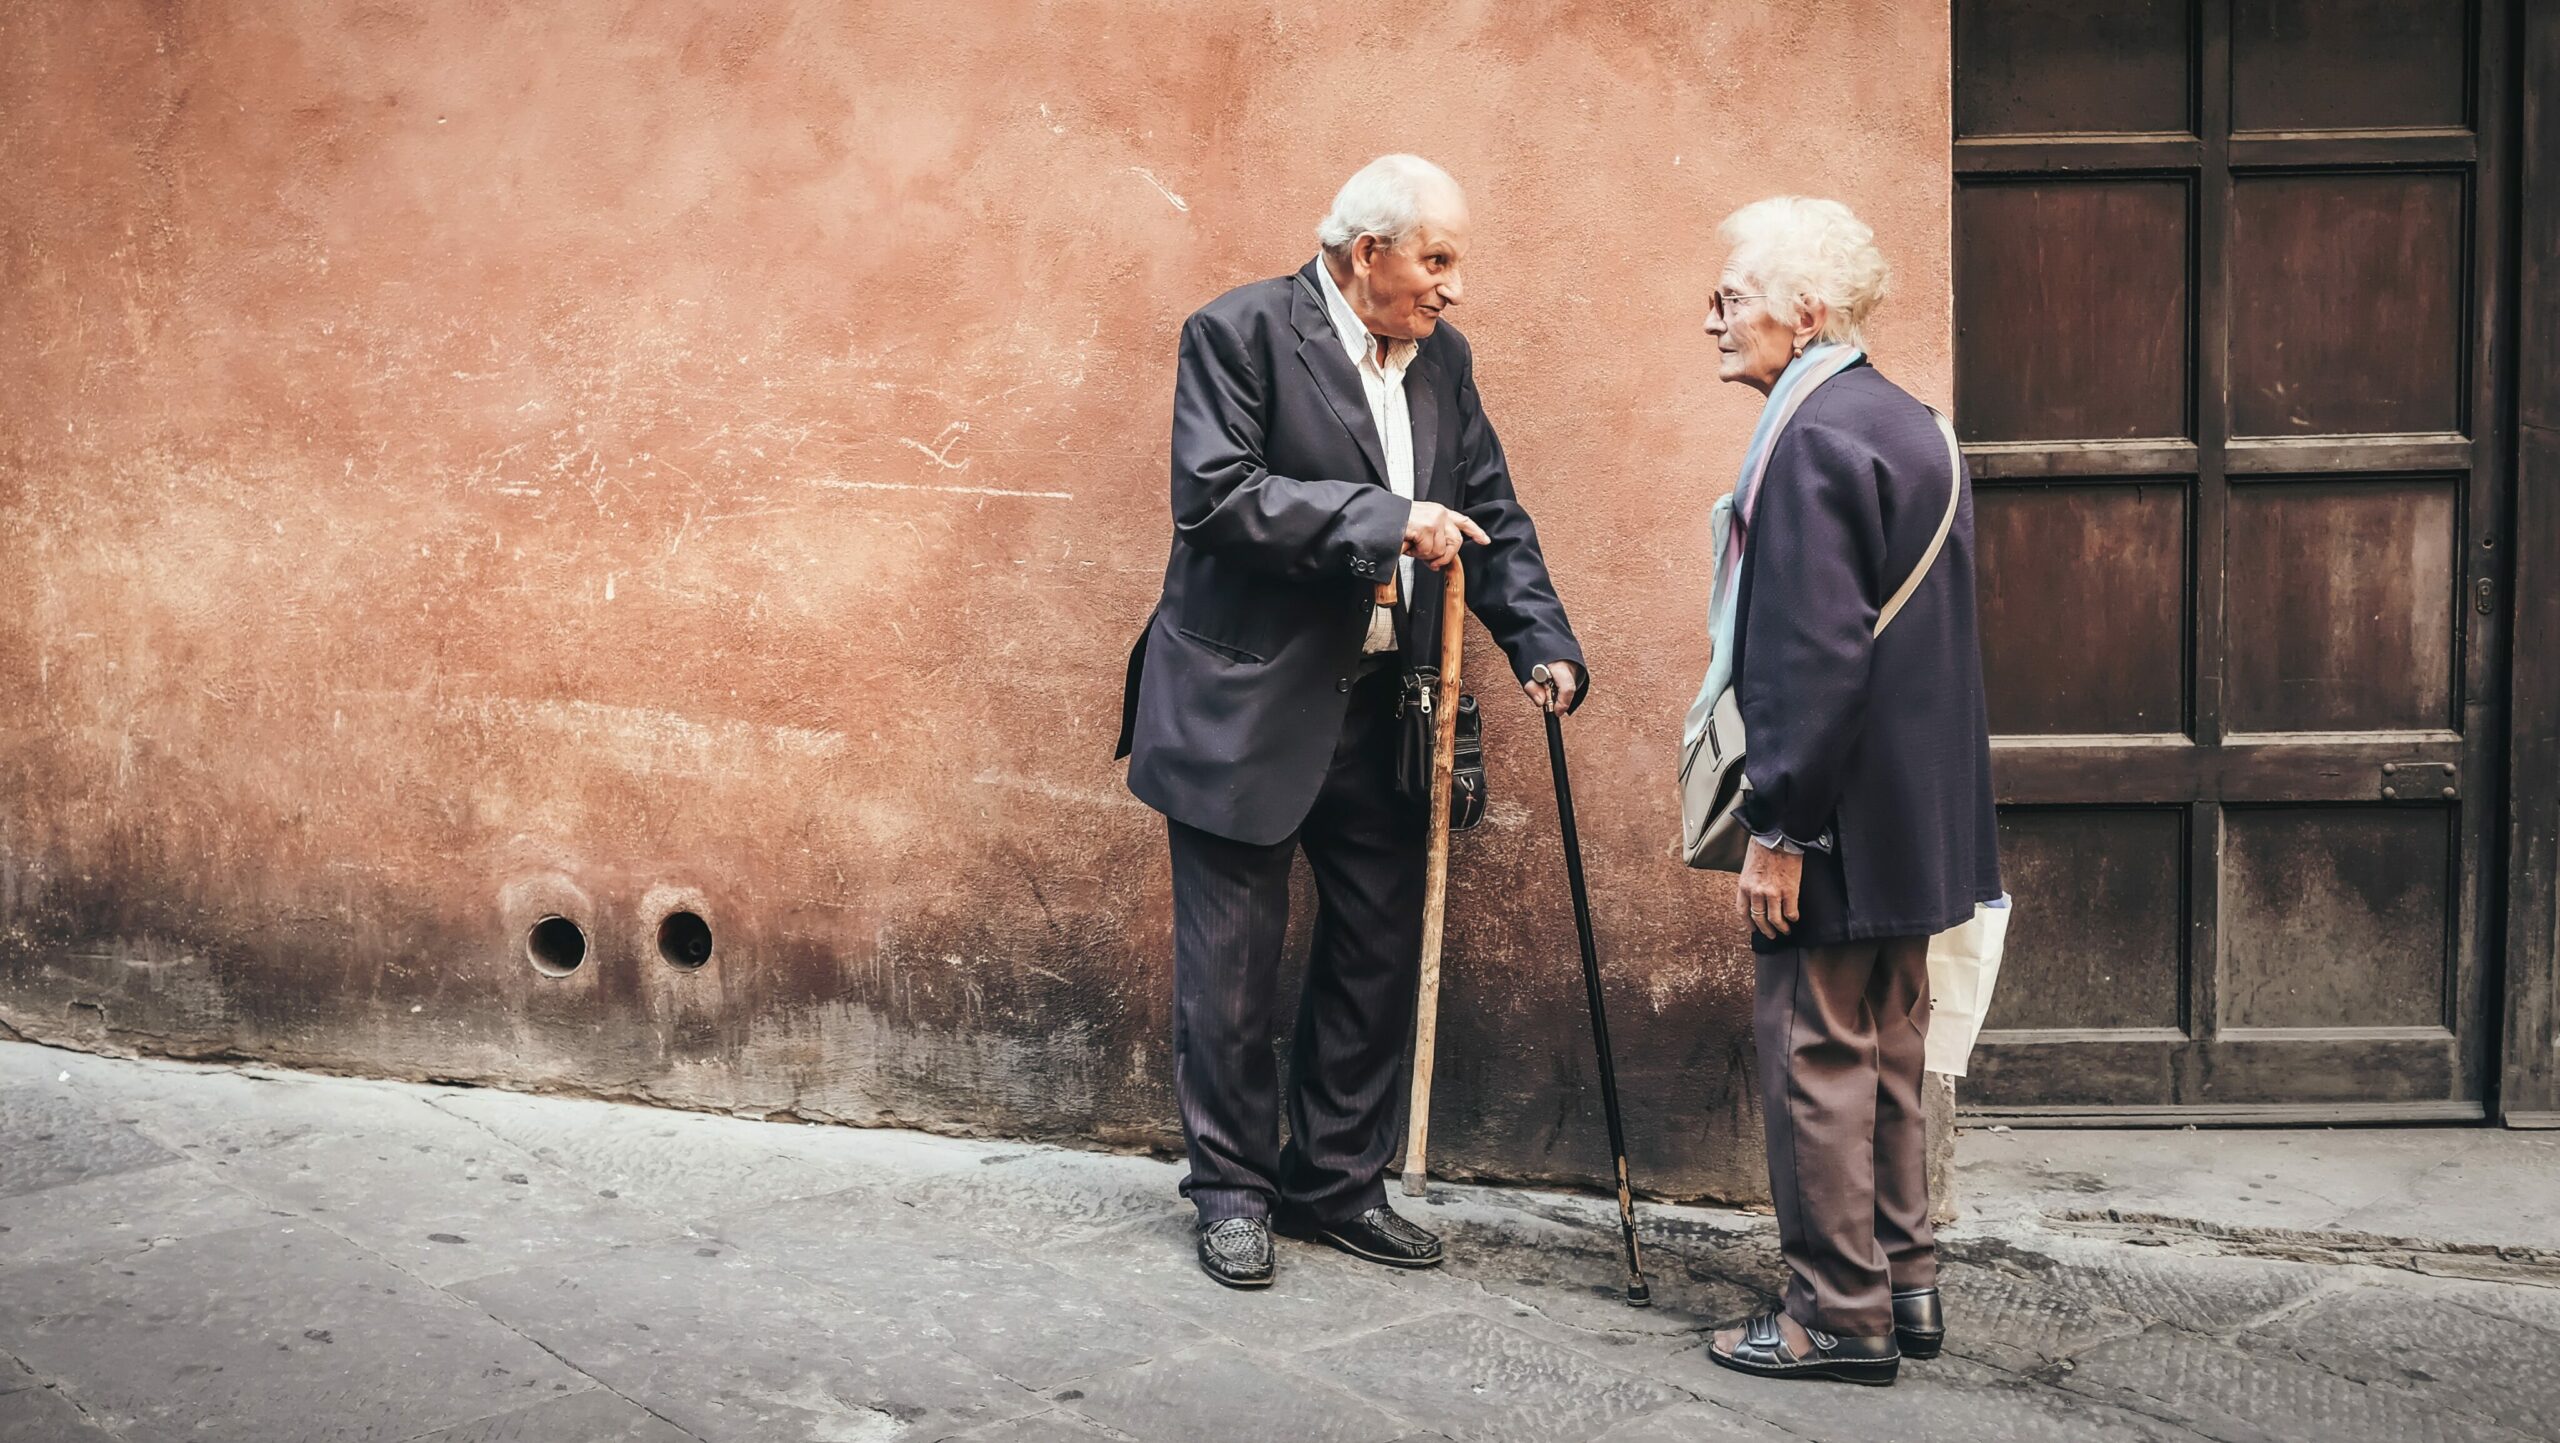 Stürze im Alter: Zwei ältere Menschen unterhalten sich vor einer roten Hauswand.